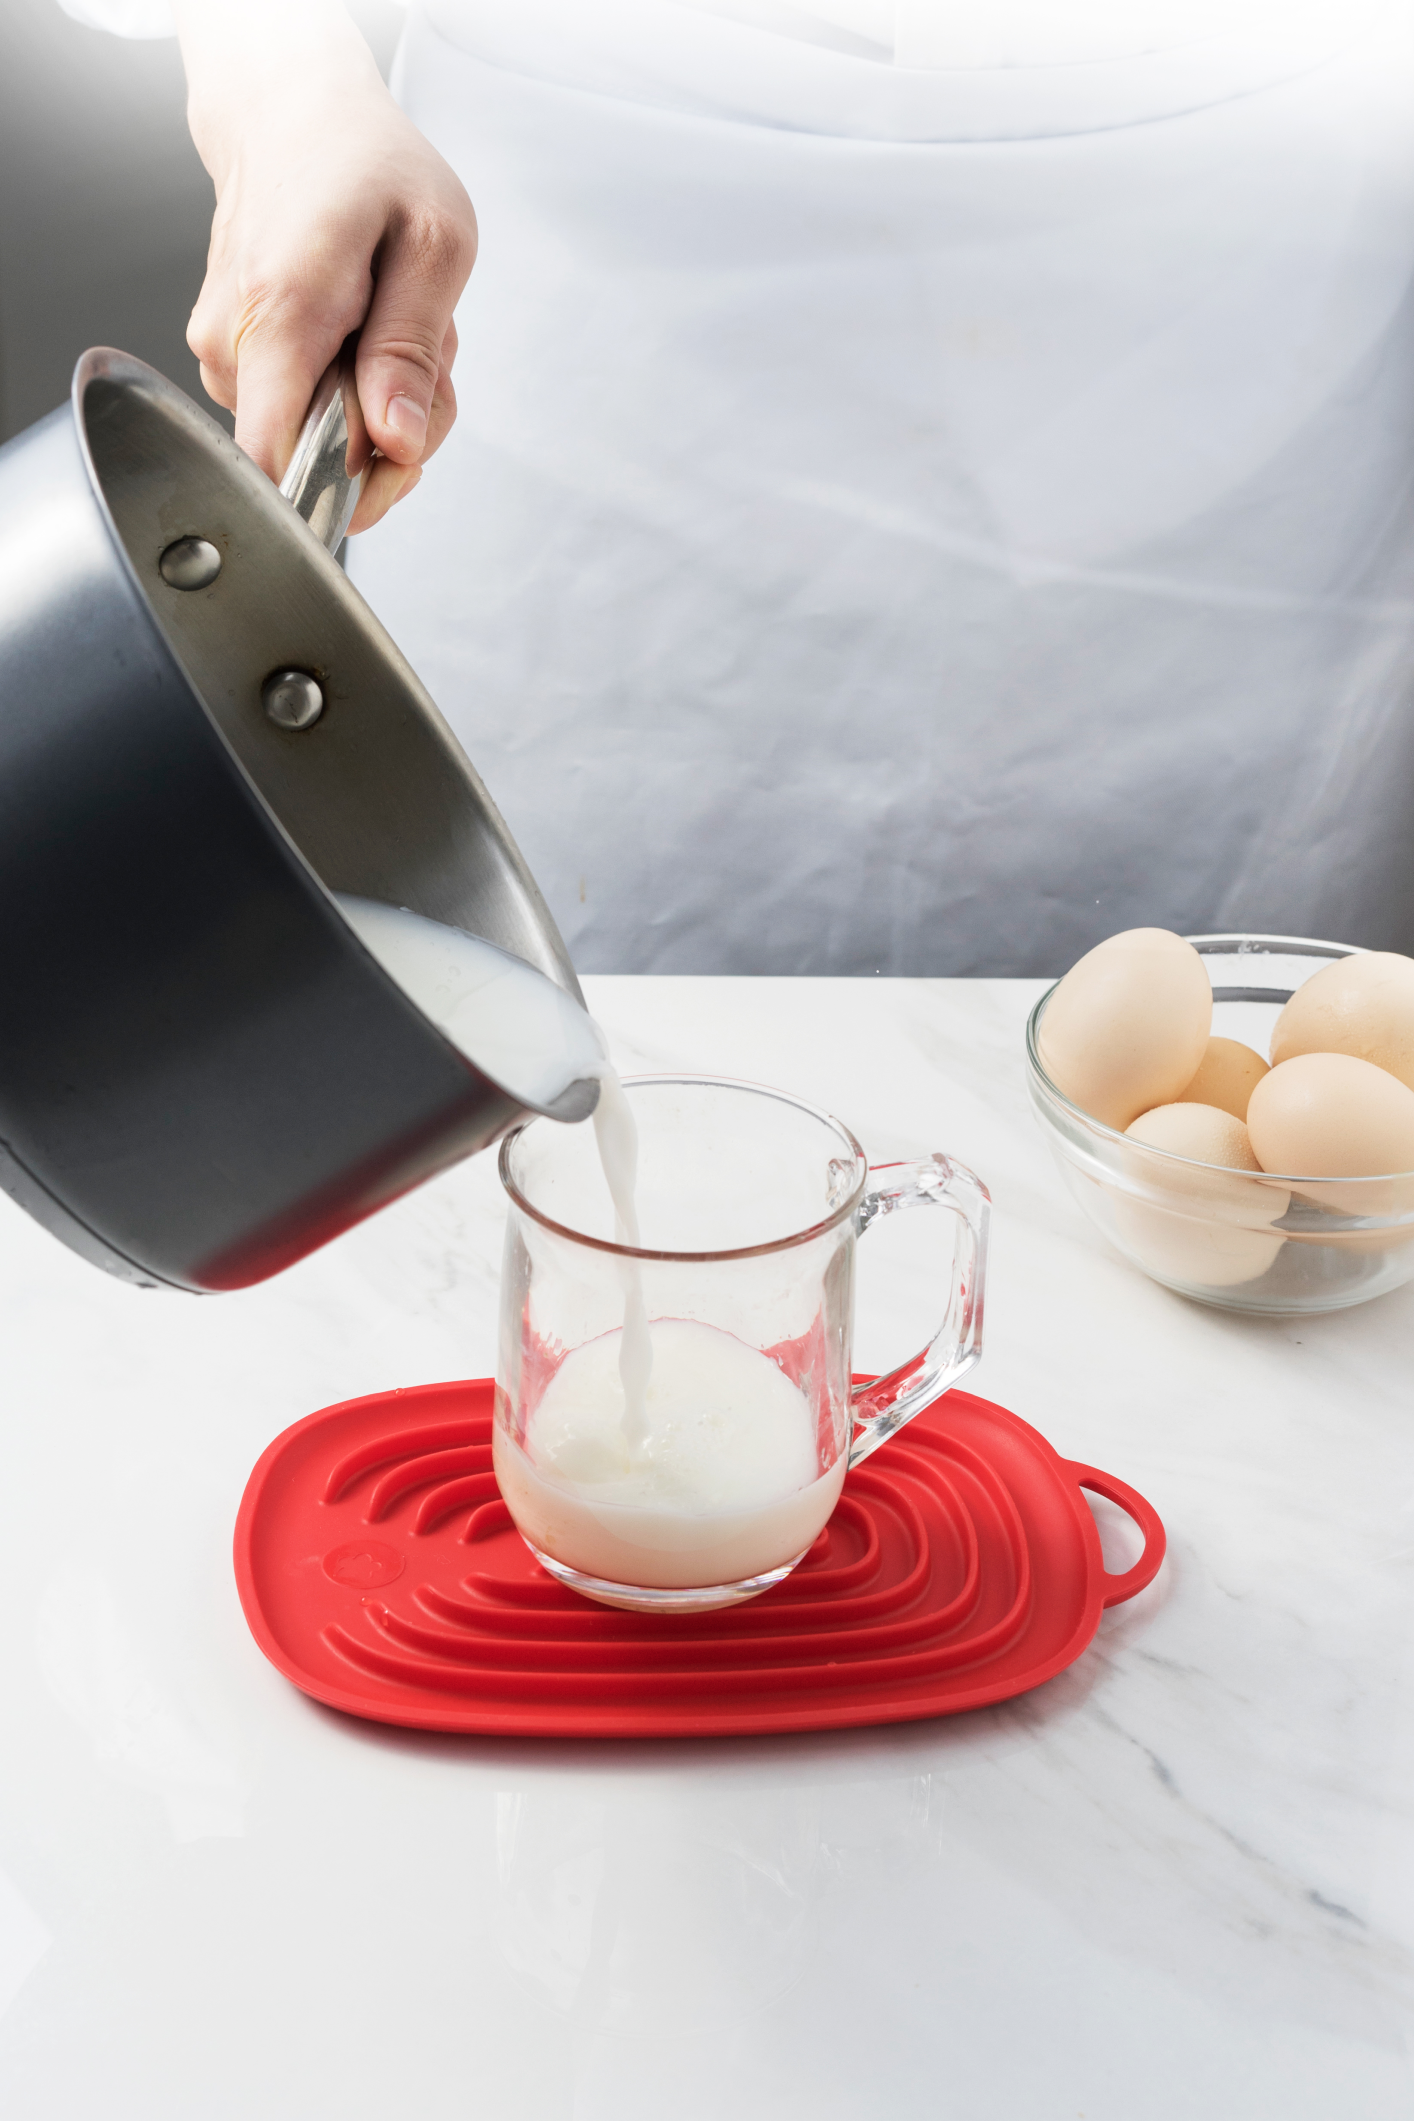 Eine Hand gießt Milch aus einem Topf in eine Messkanne auf einem roten Silikon-Untersetzer, auf einer Marmorarbeitsplatte mit Eiern im Hintergrund